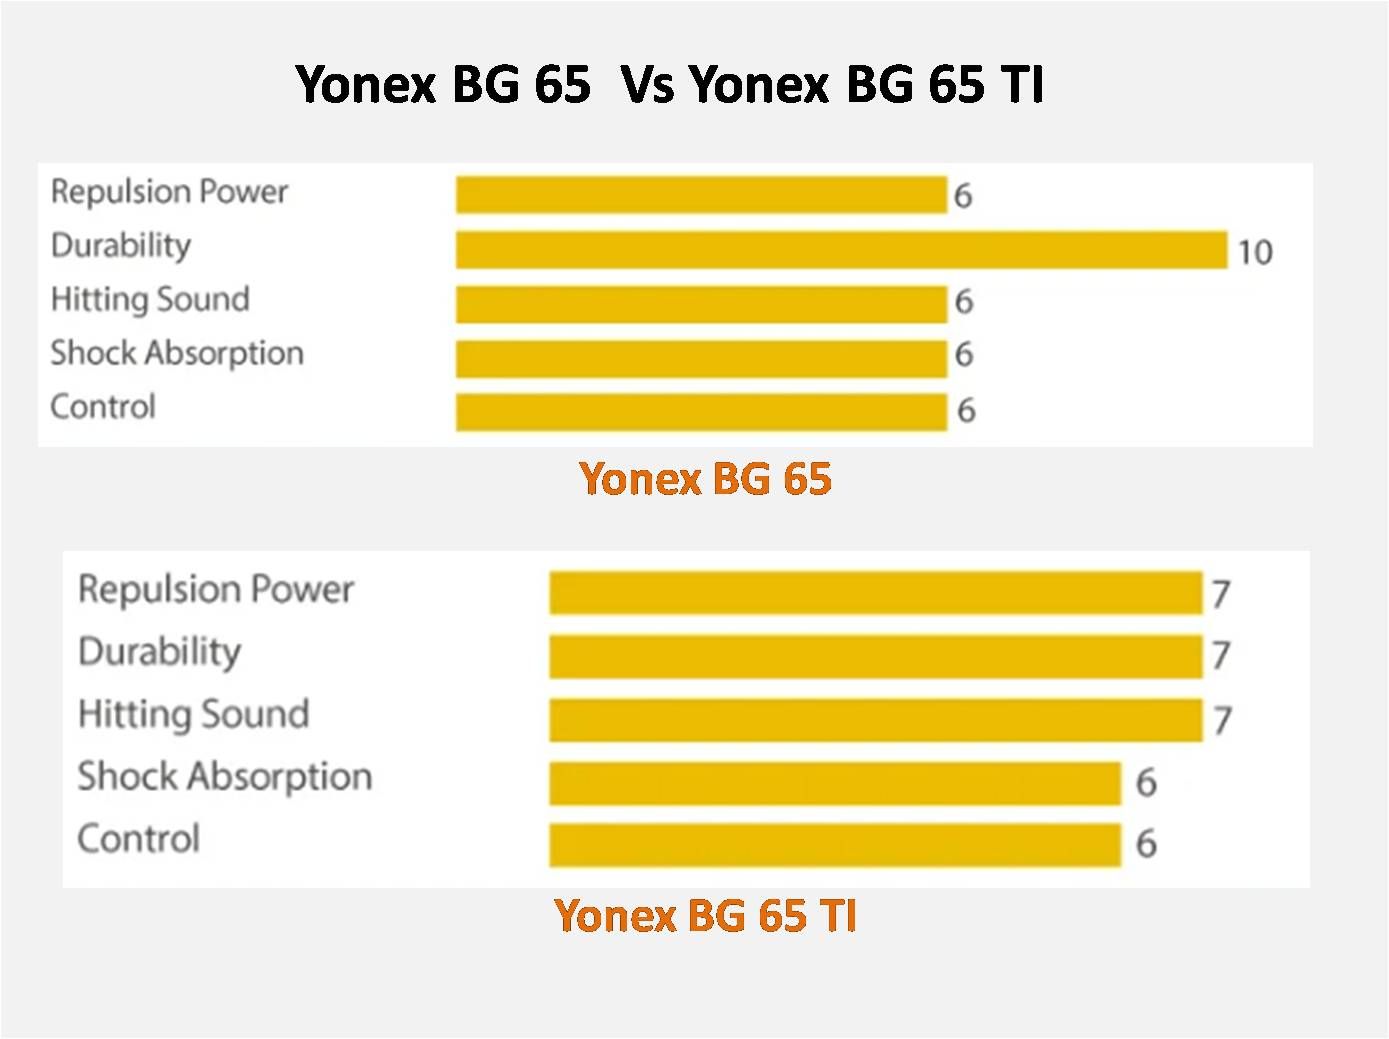 Yonex_BG_65_vs_Yonex_BG_65_TI_comparision.jpg